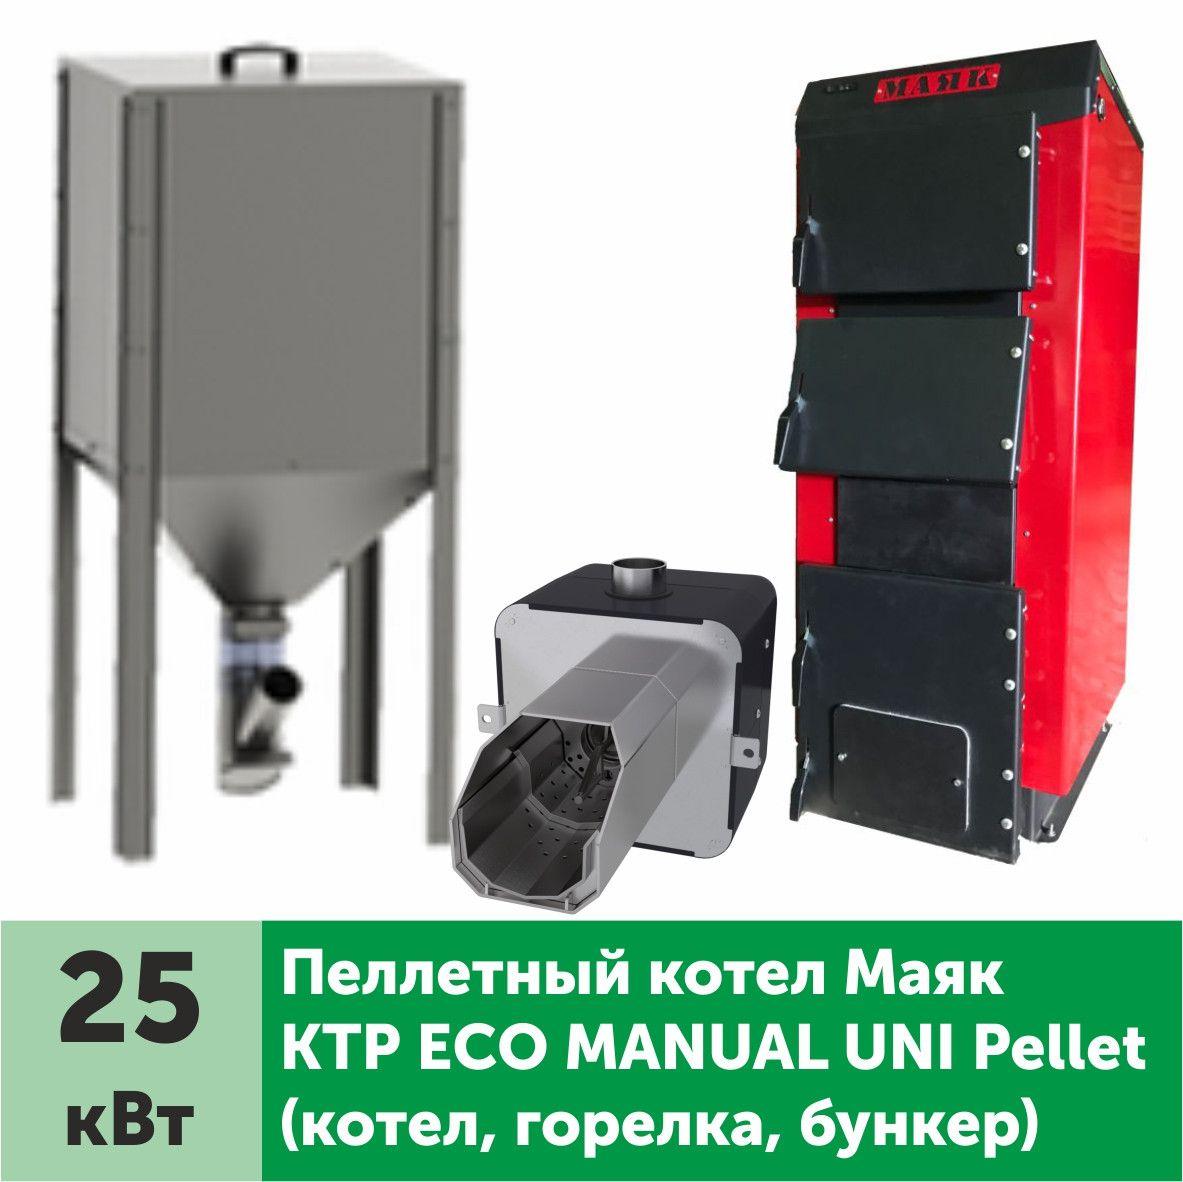 Пеллетный котел МАЯК КТР Eco Manual Uni Pellet 25 кВт